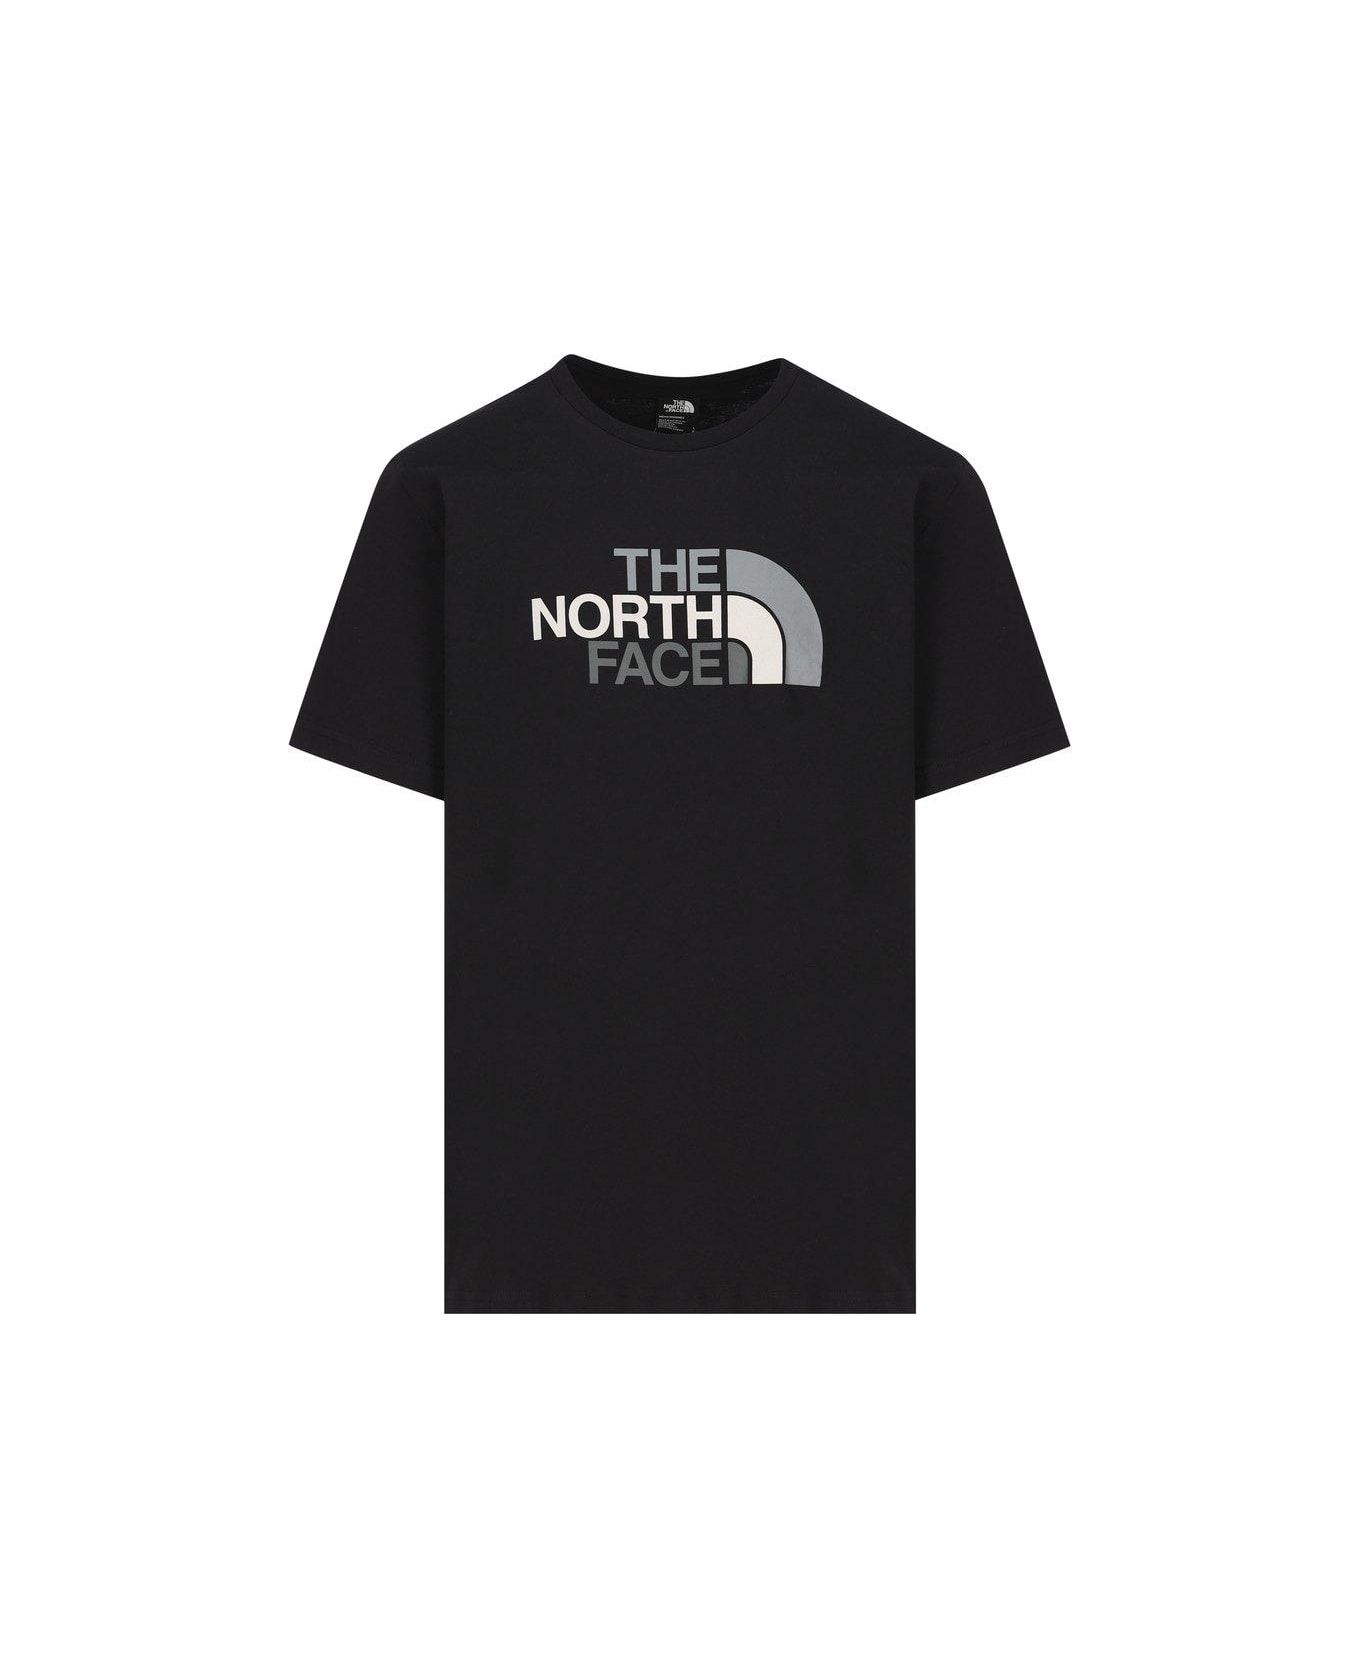 The North Face Logo Printed Crewneck T-shirt